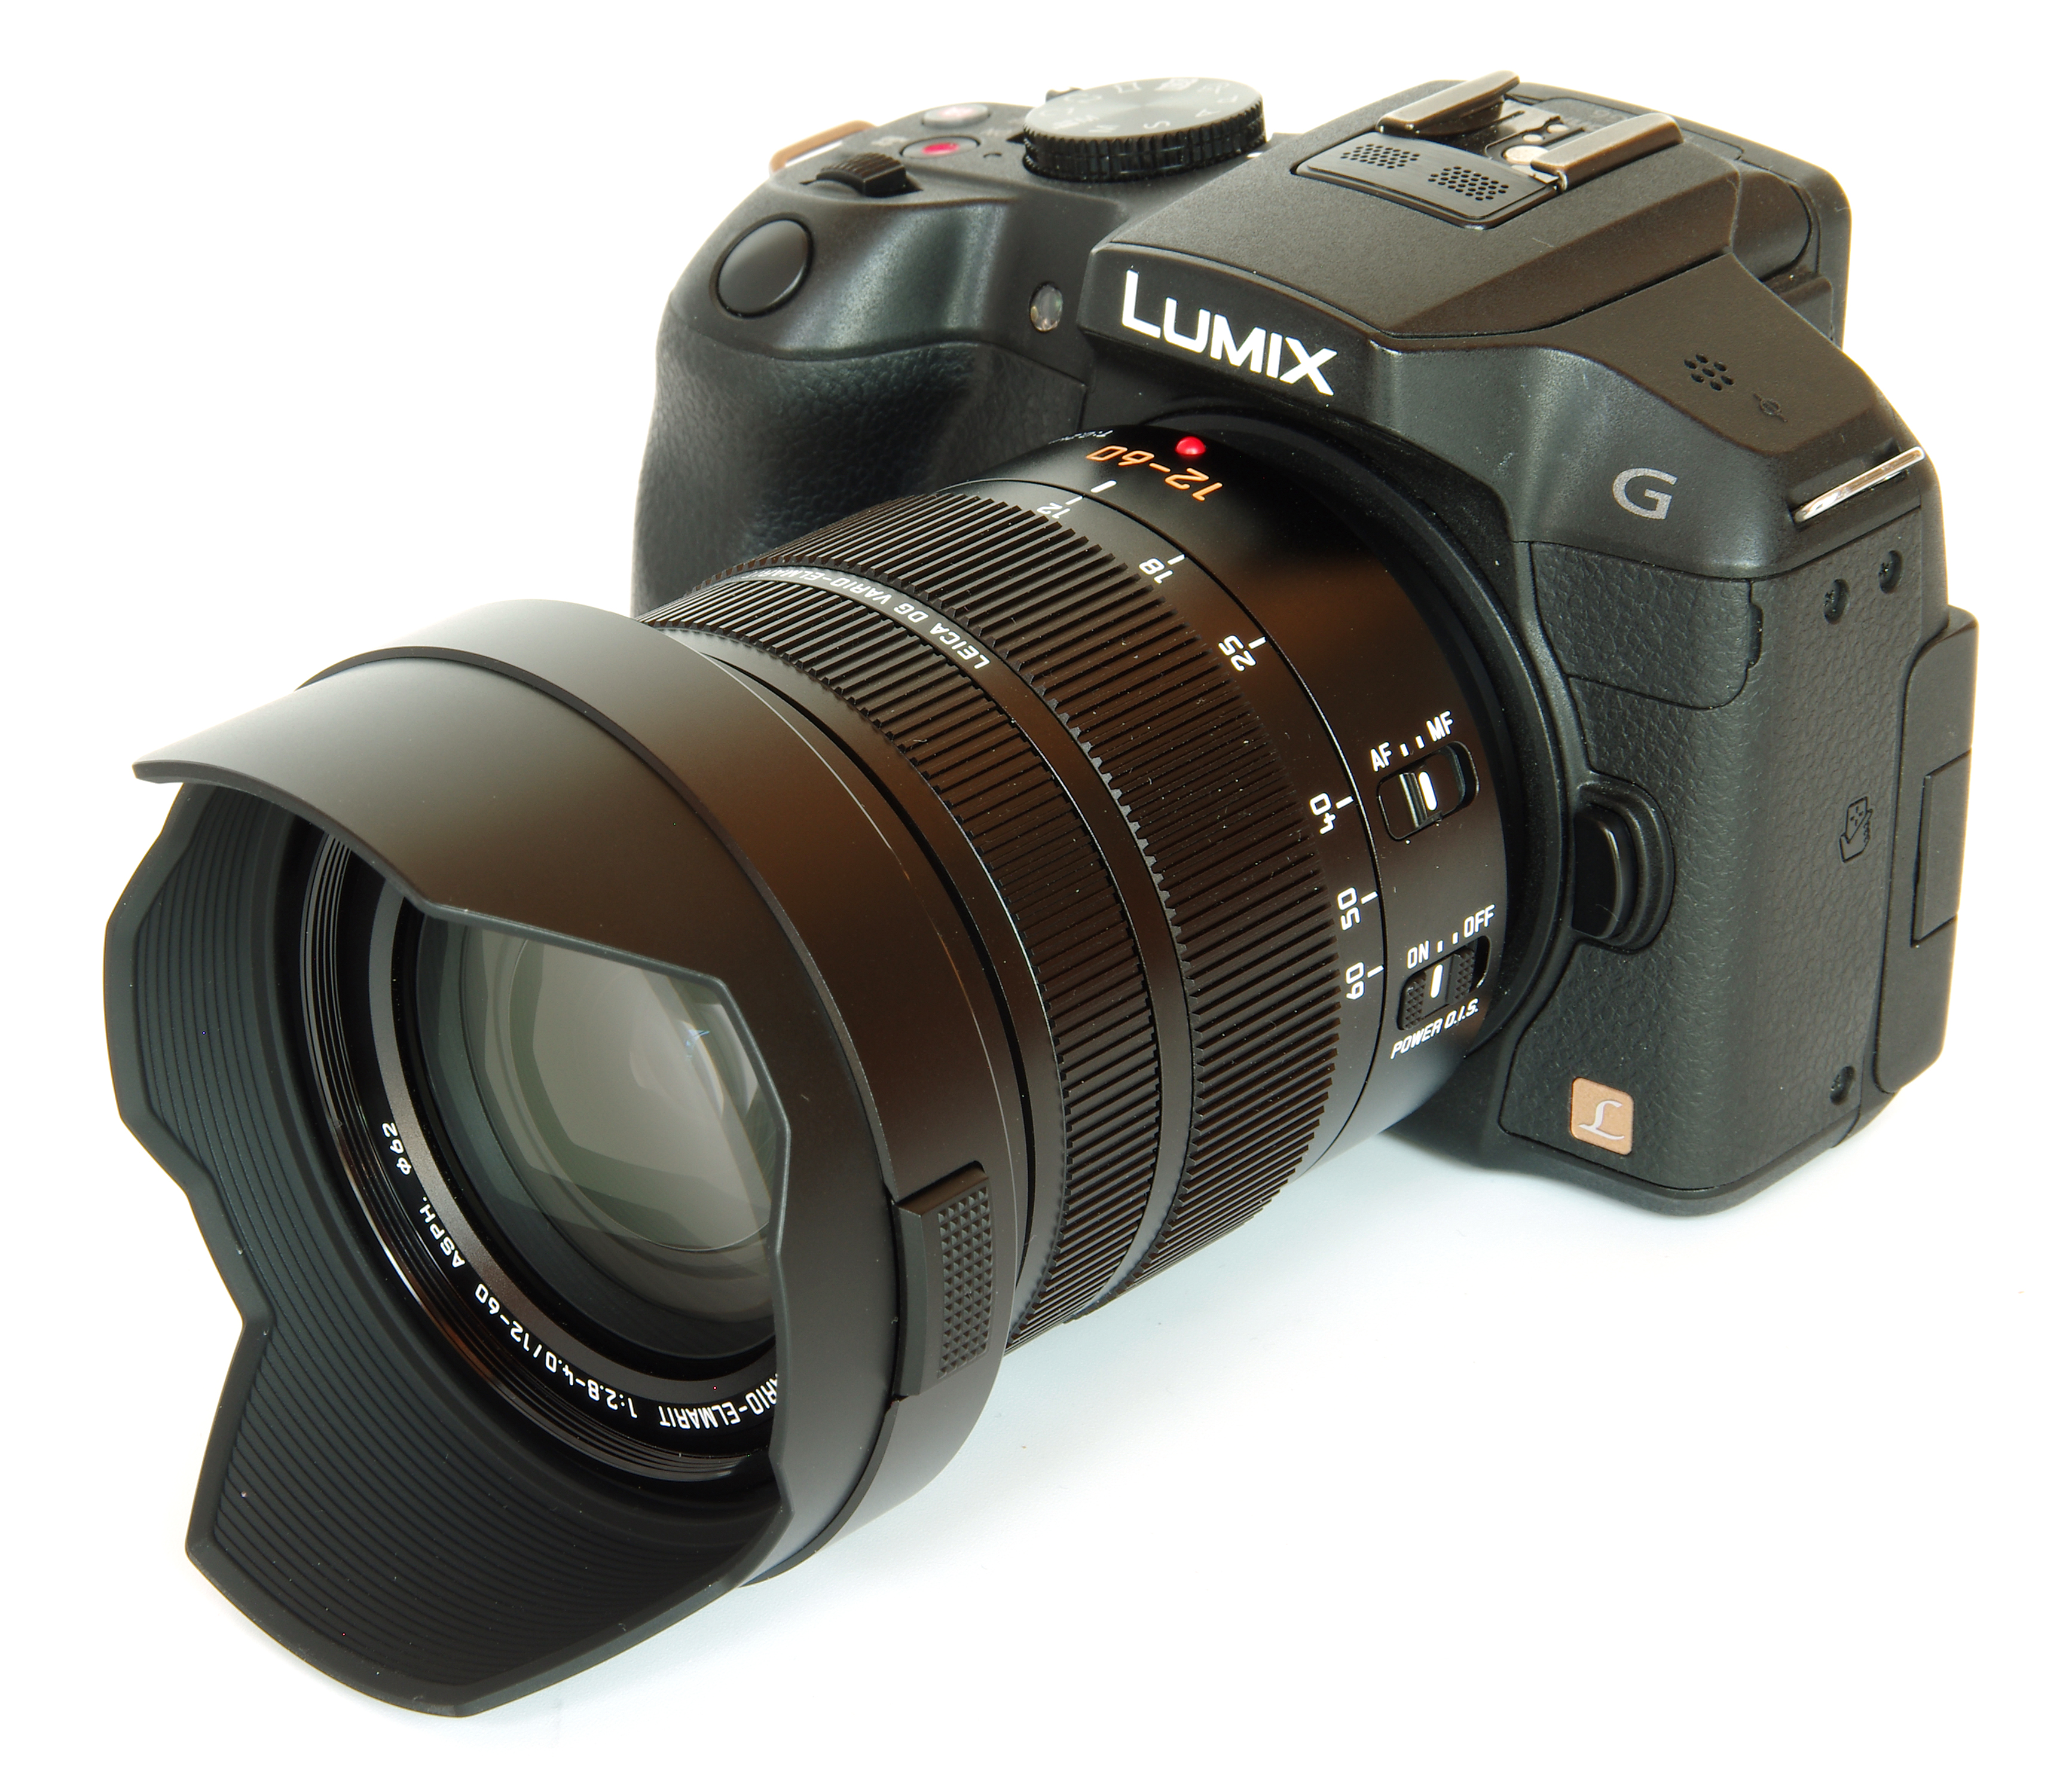 Leica Vario-Elmarit 12-60mm f/2.8-4.0 Review